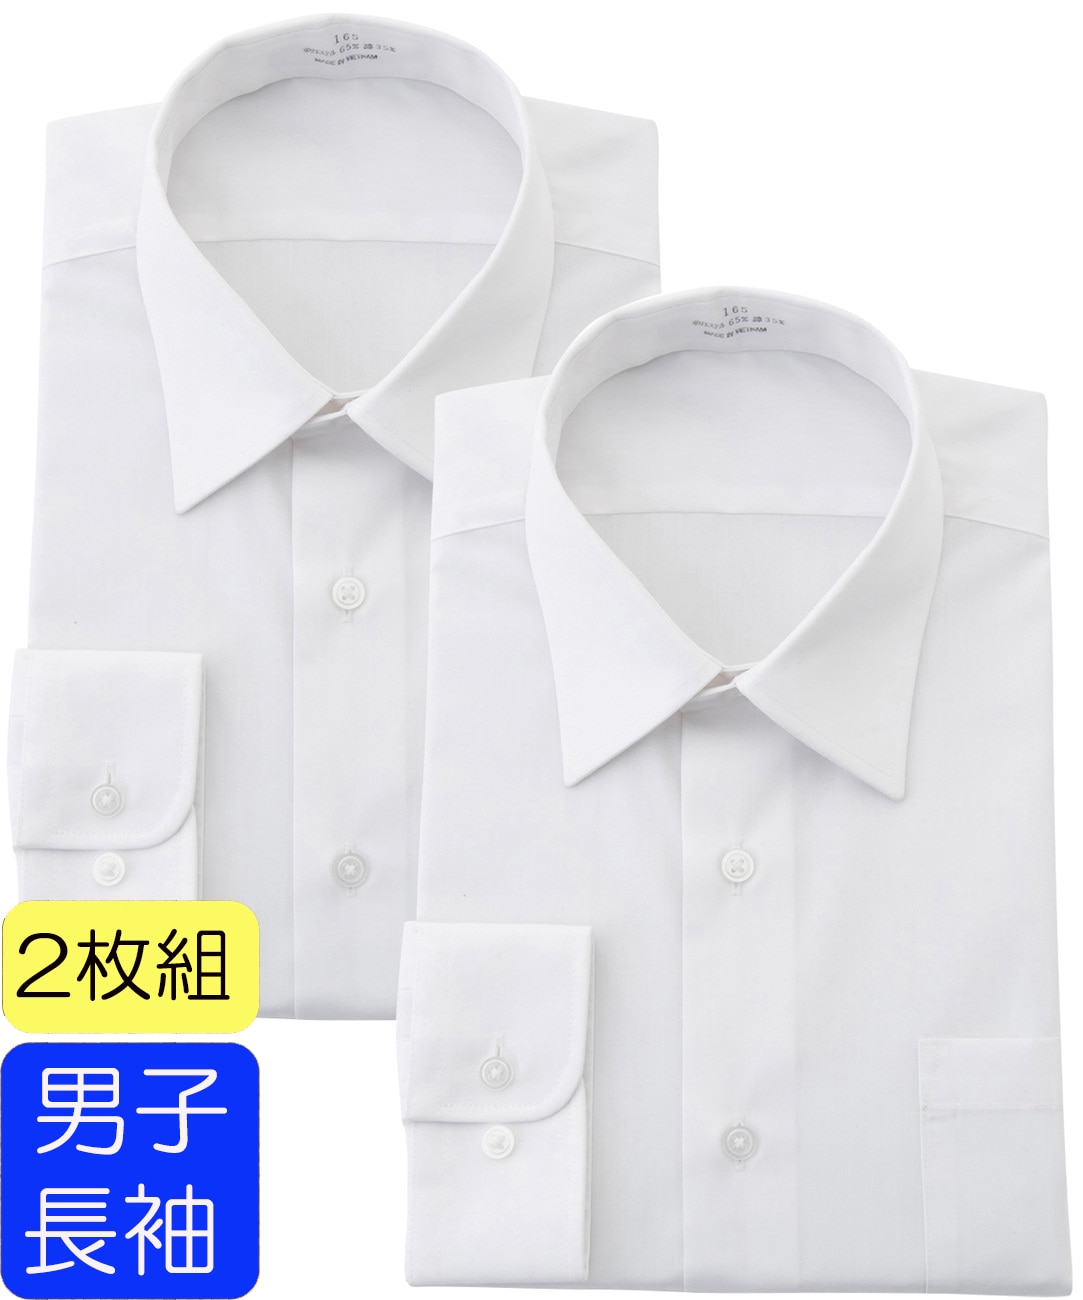 学生服 男子 長袖 スクールシャツ 2枚セット テトロン65%